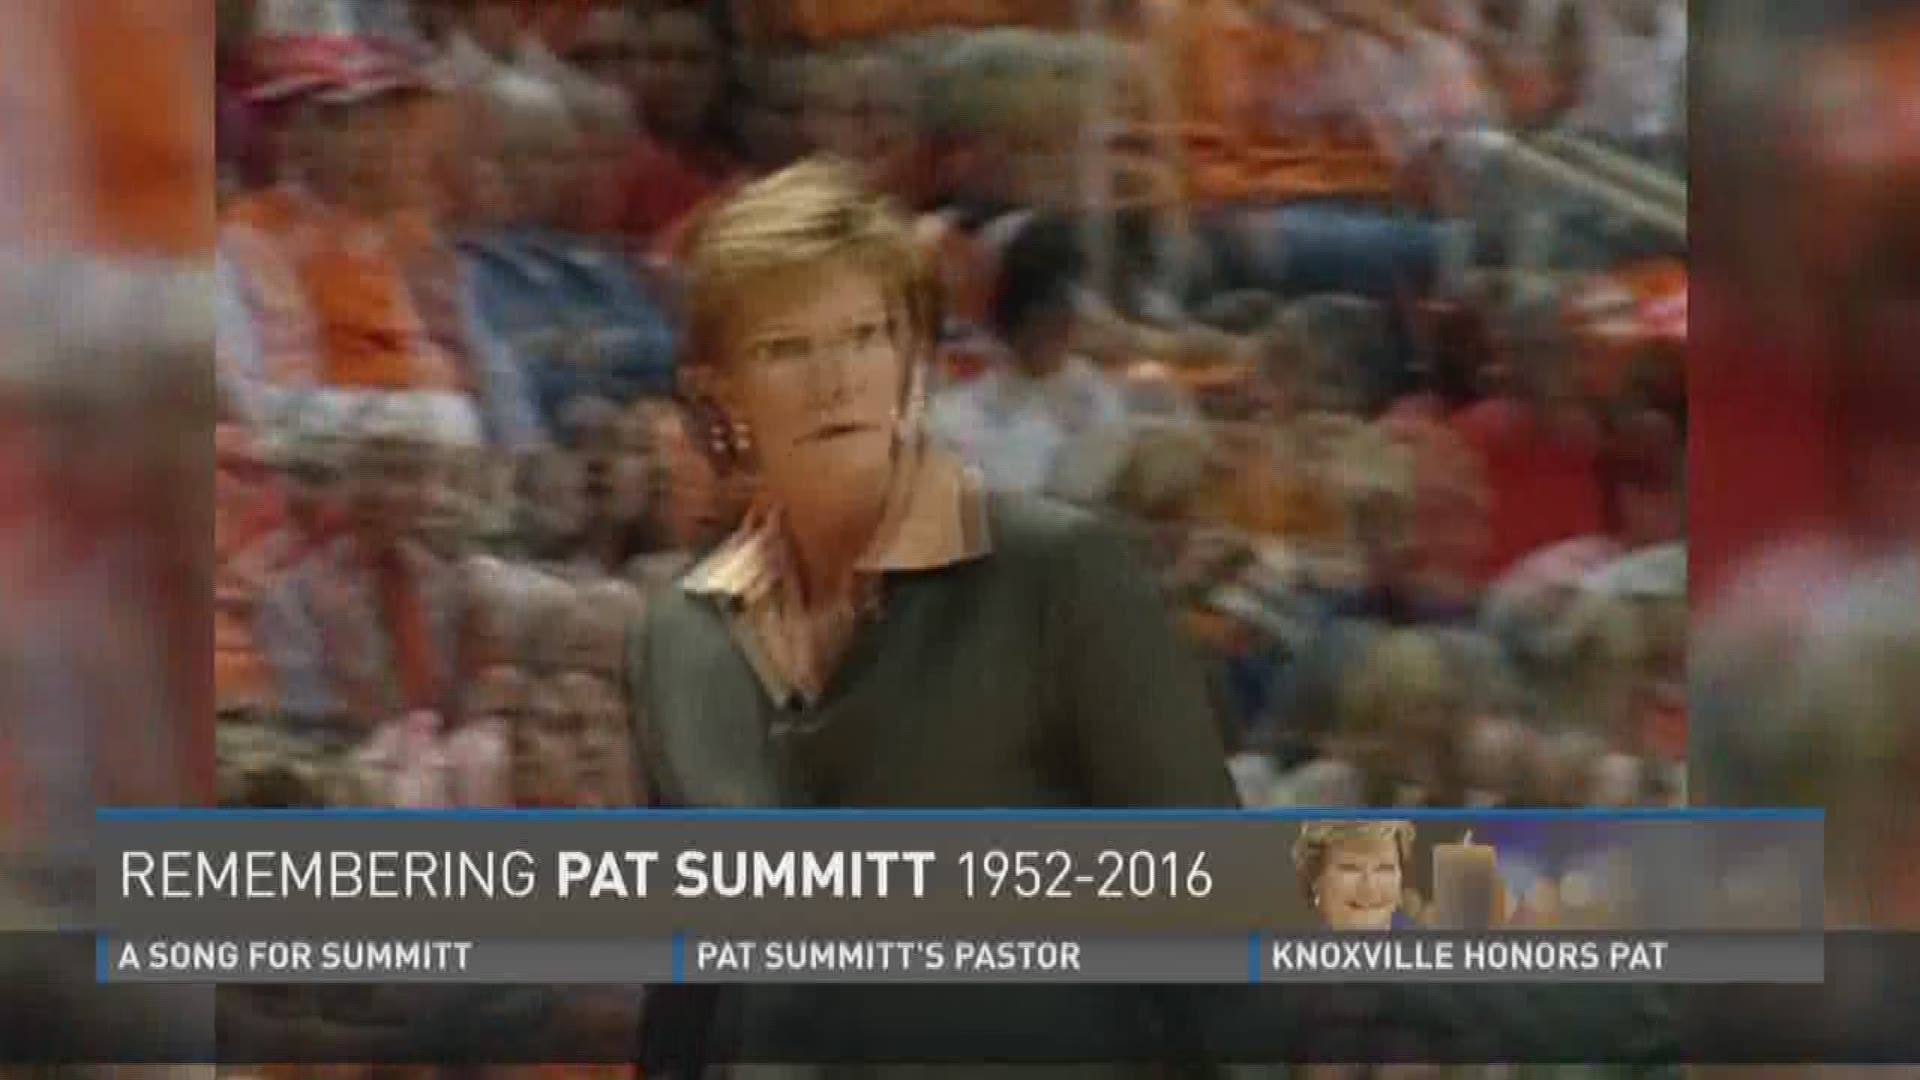 Remembering Pat Summitt 1952-2016